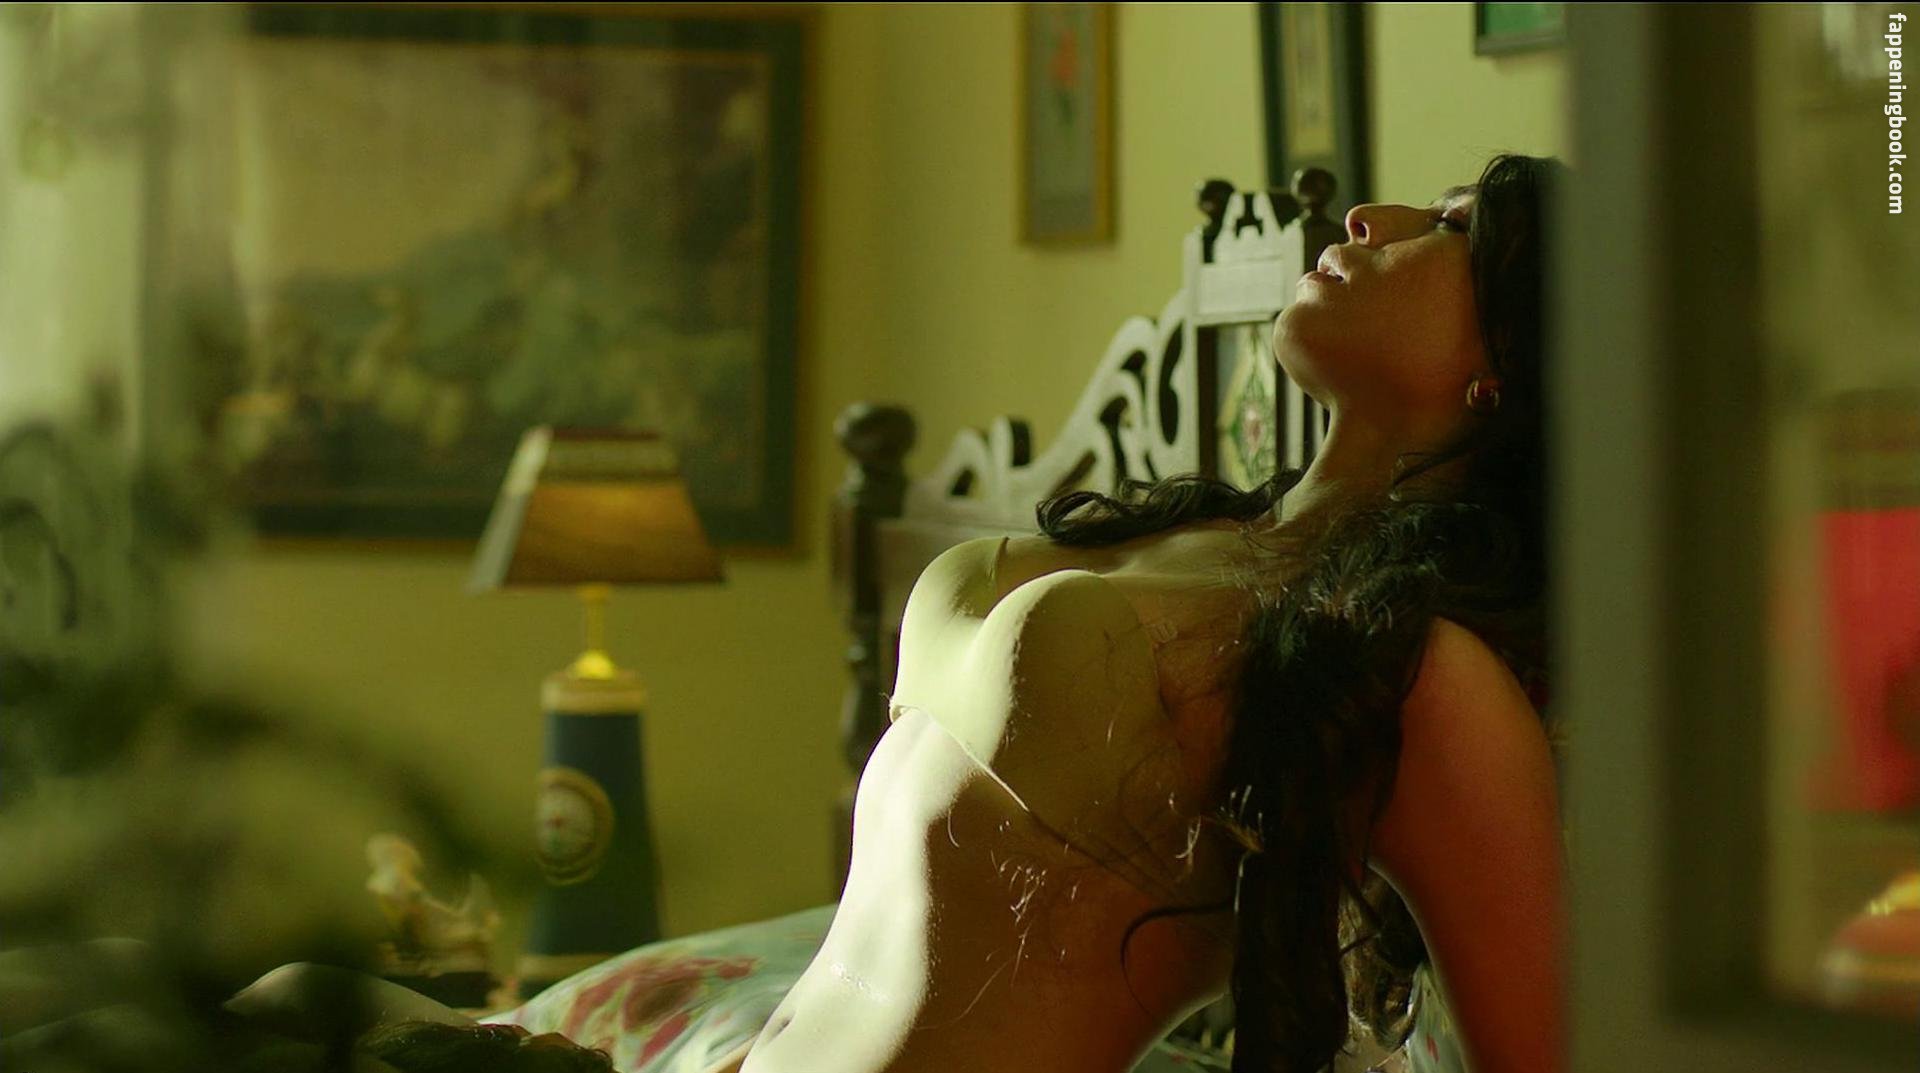 Shilpa Nude - Shilpa Shukla Nude, Sexy, The Fappening, Uncensored - Photo ...